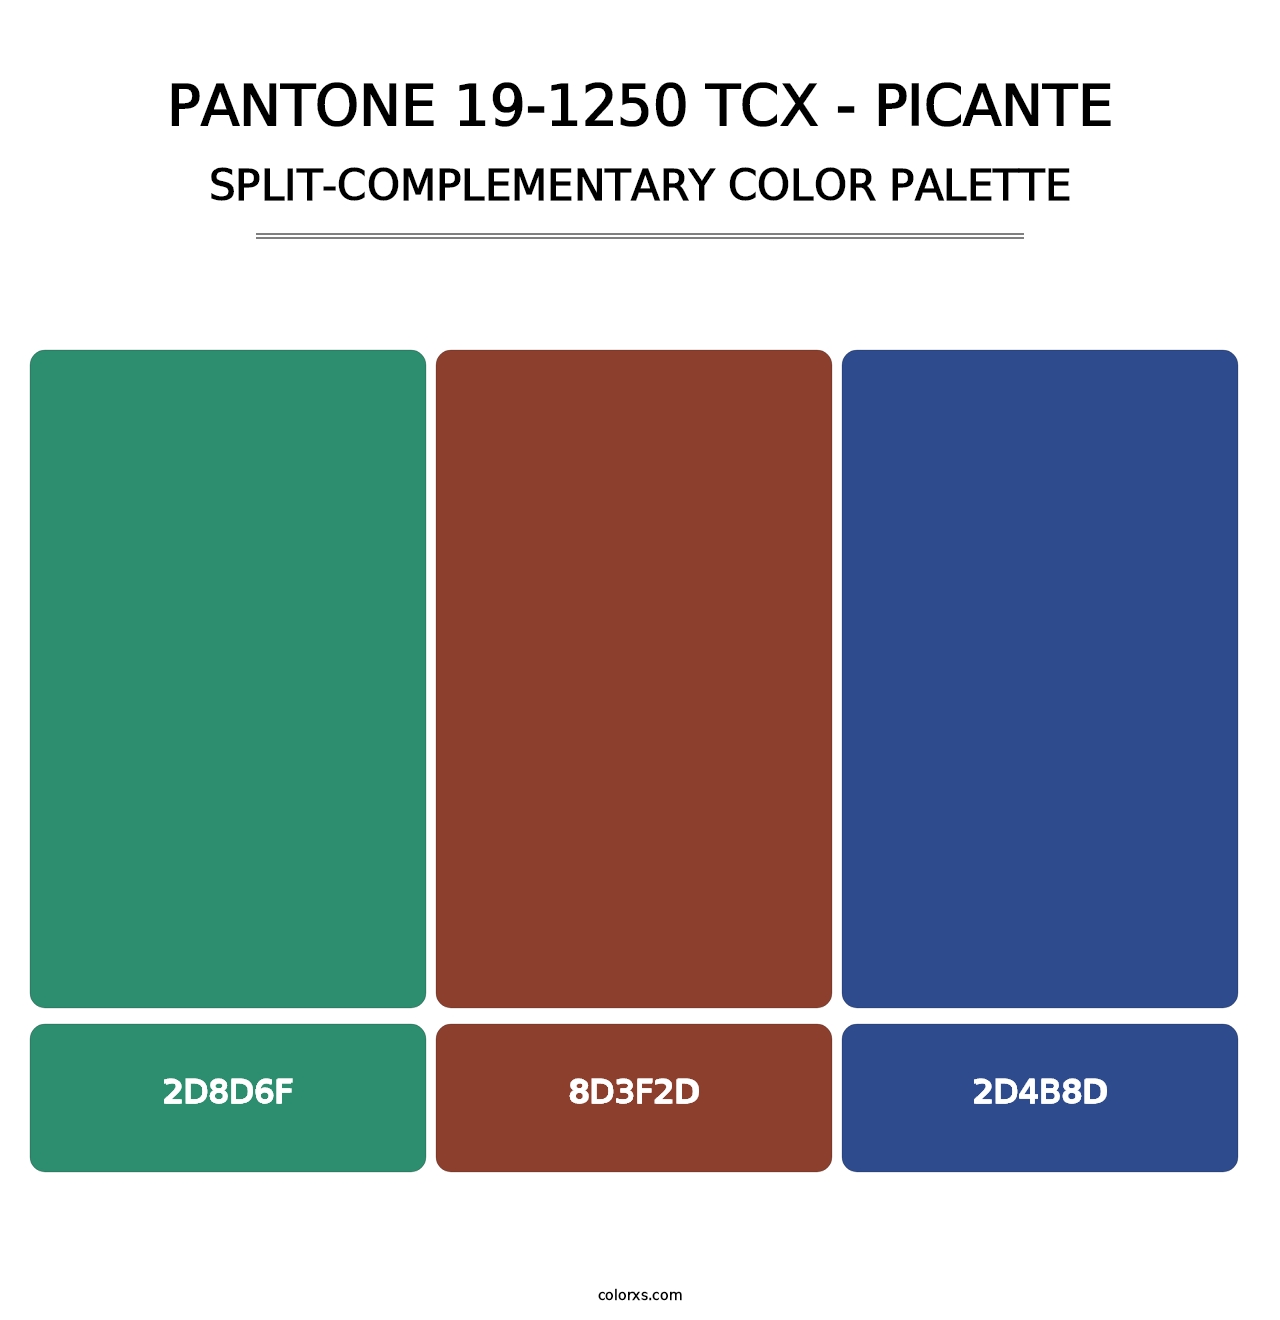 PANTONE 19-1250 TCX - Picante - Split-Complementary Color Palette